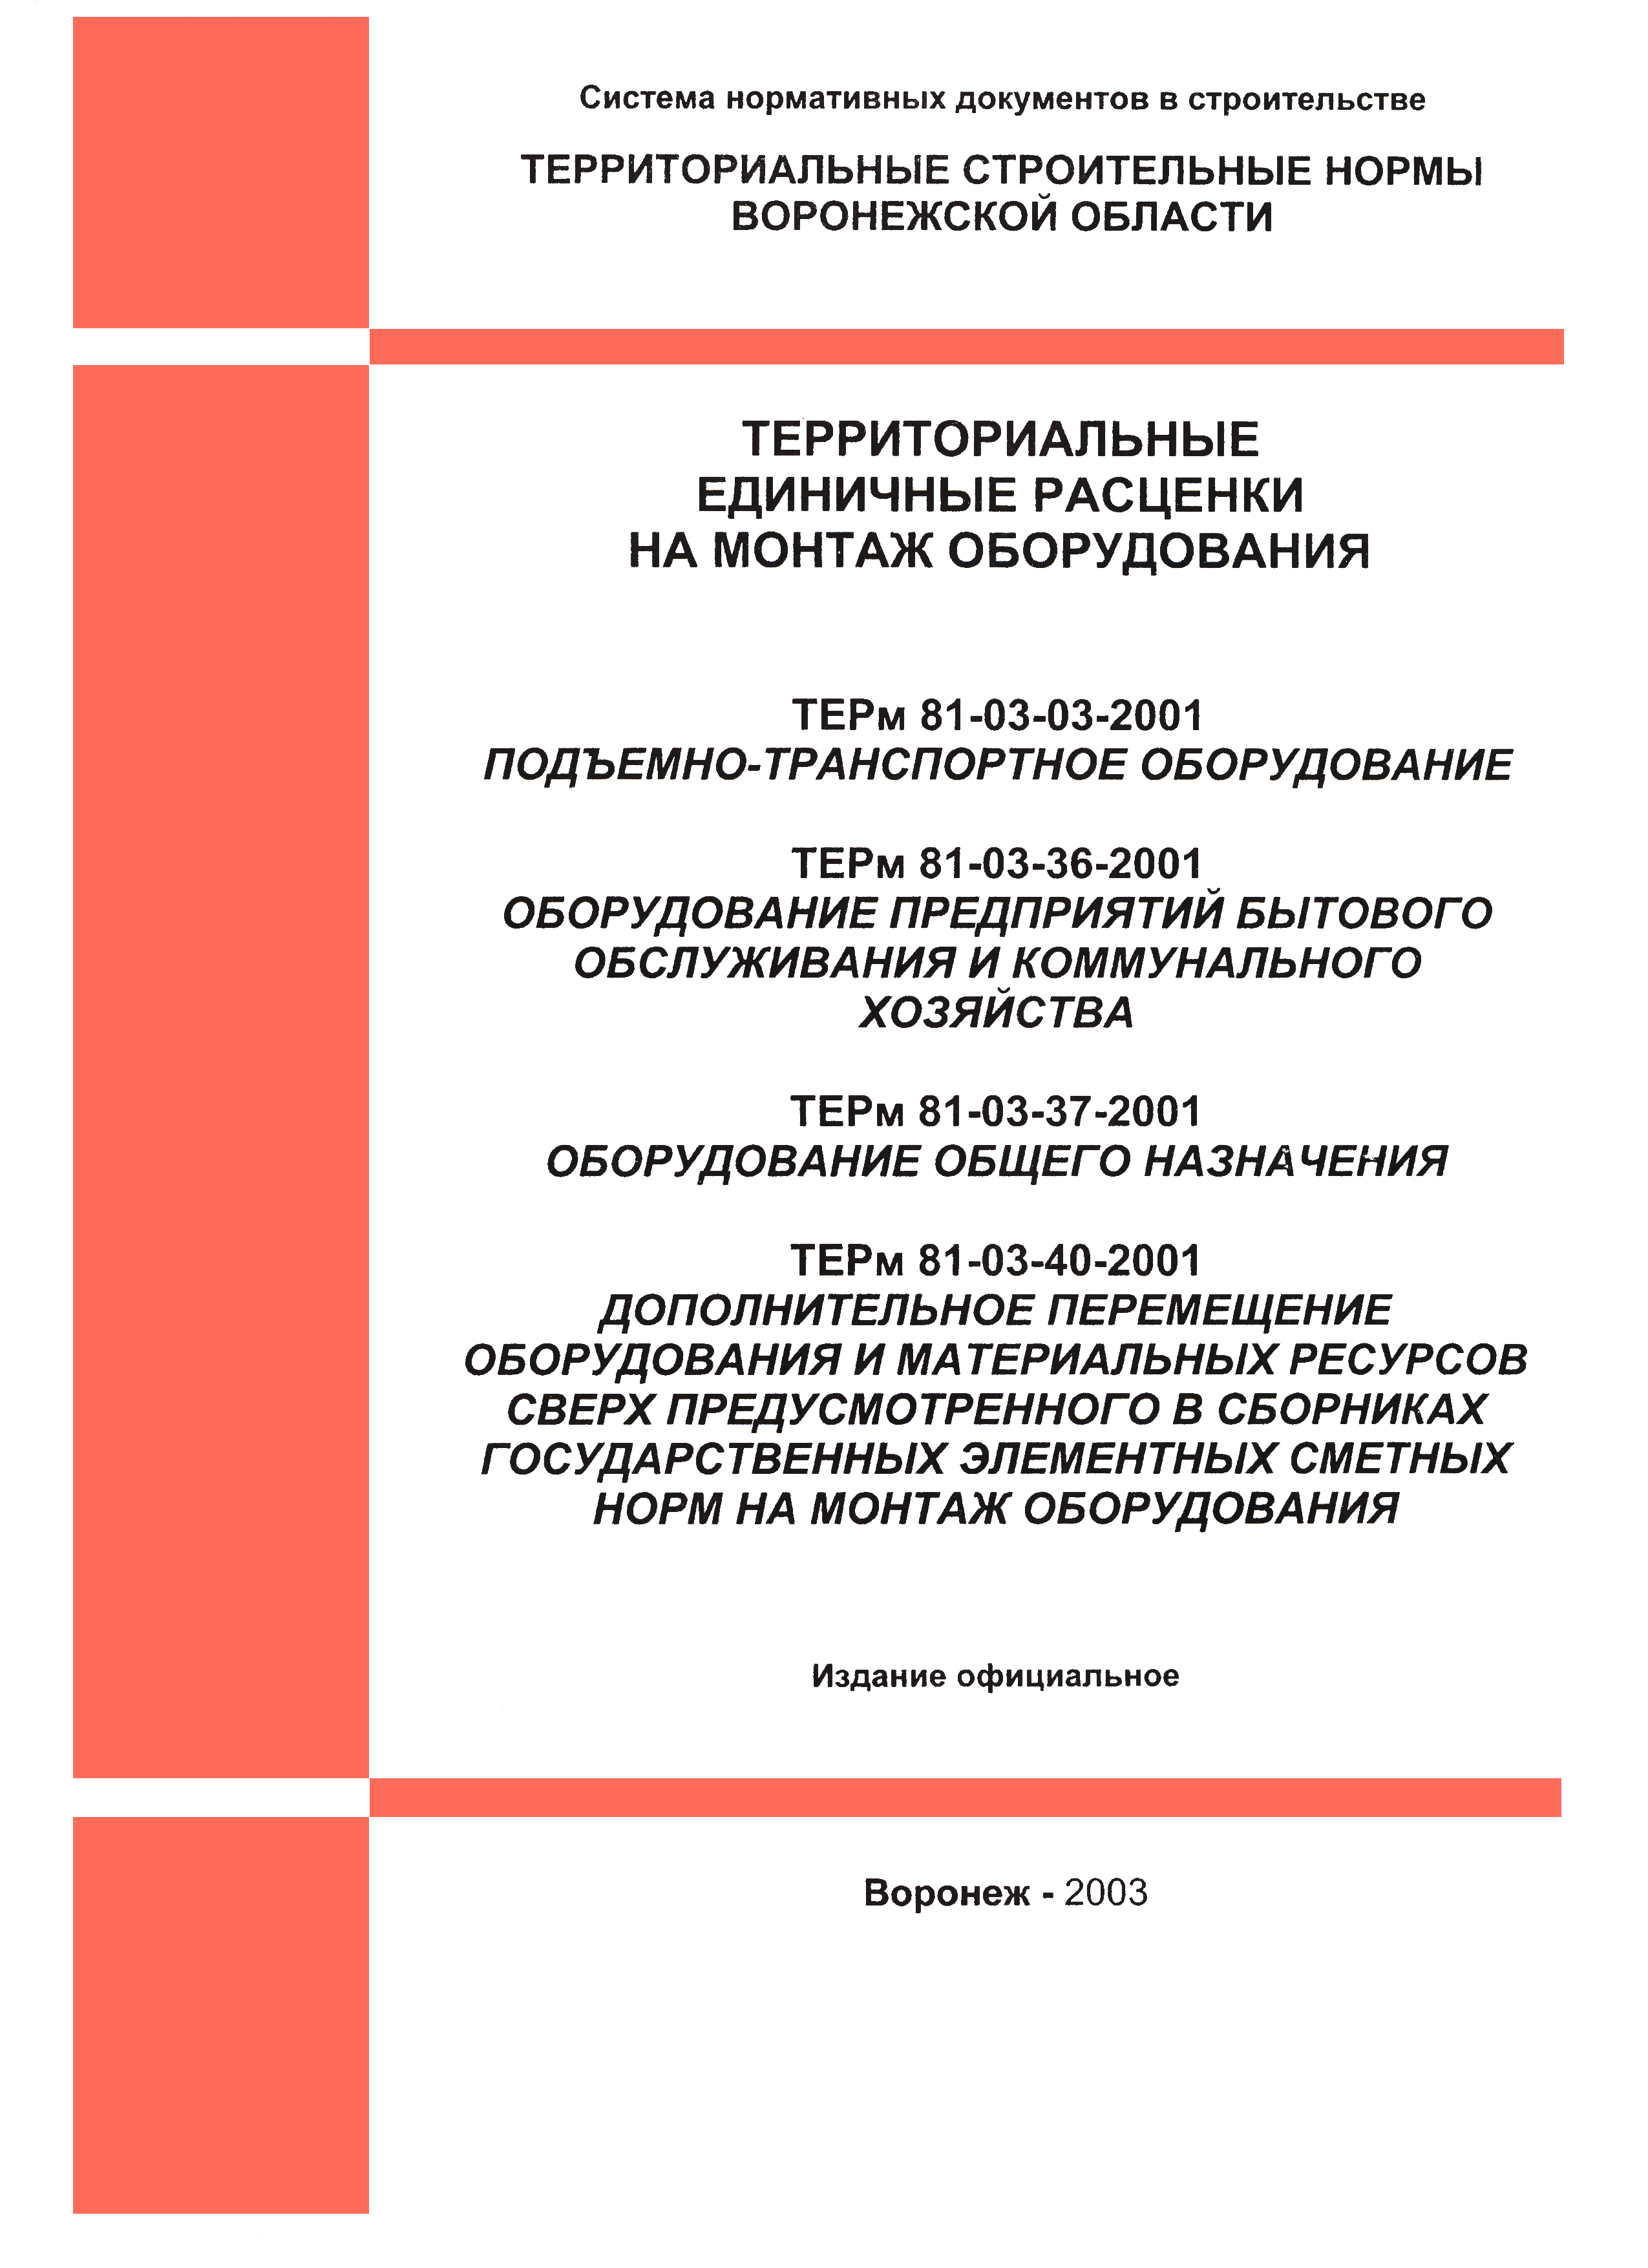 ТЕРм Воронежская область 81-03-03-2001